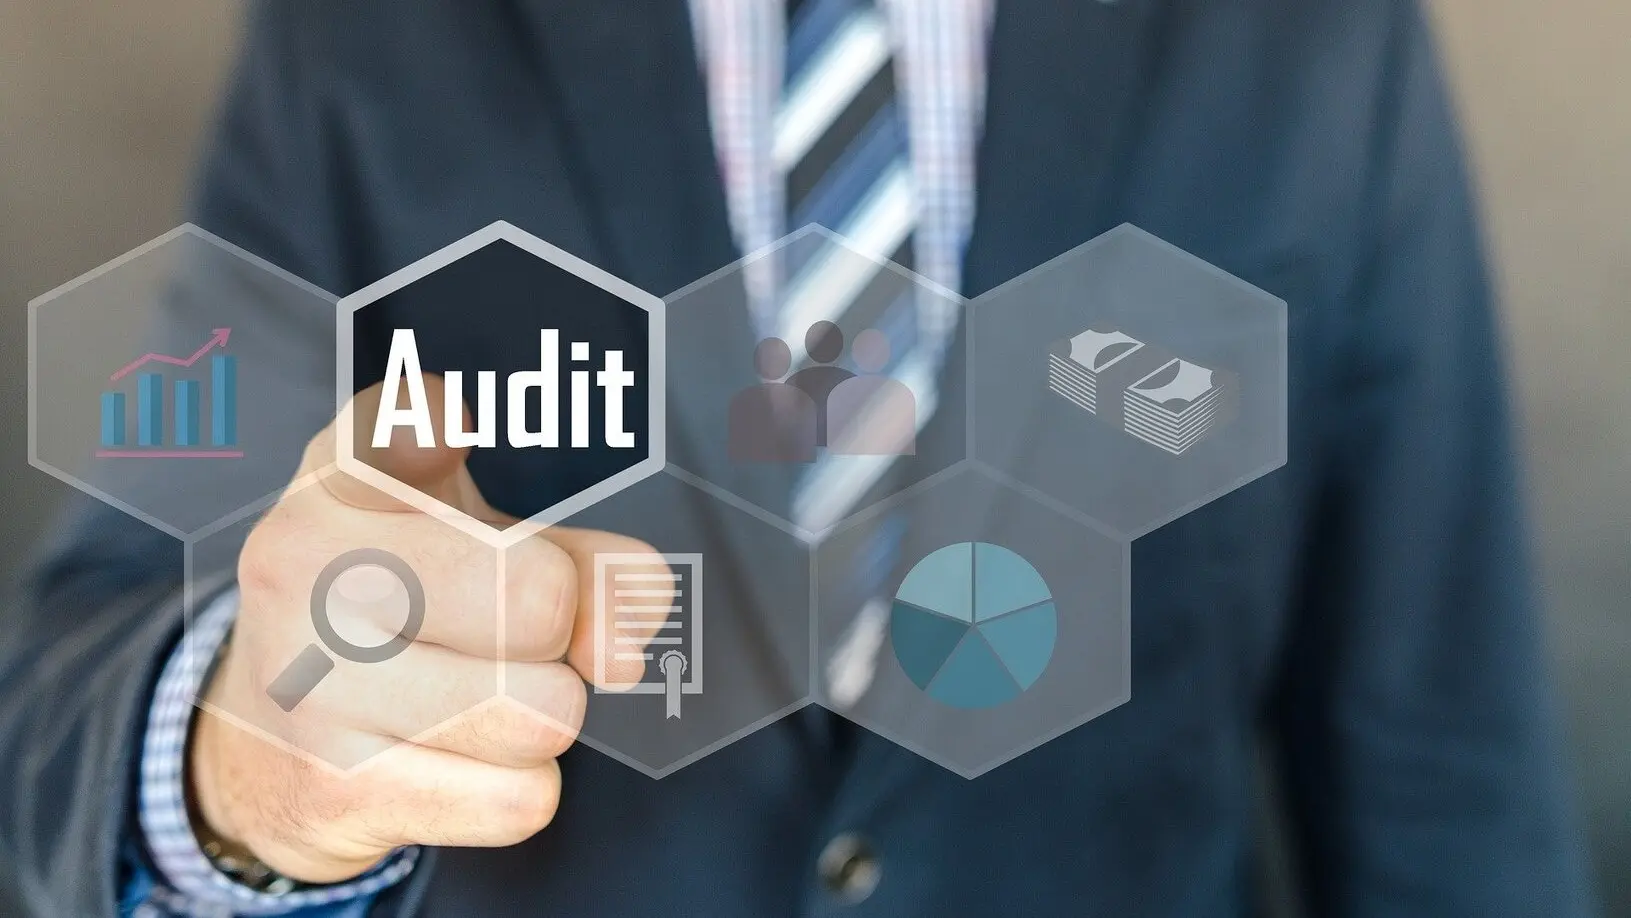 iso auditoria de sistemas - Cuál es el ISO que certifica a la auditoría de sistema